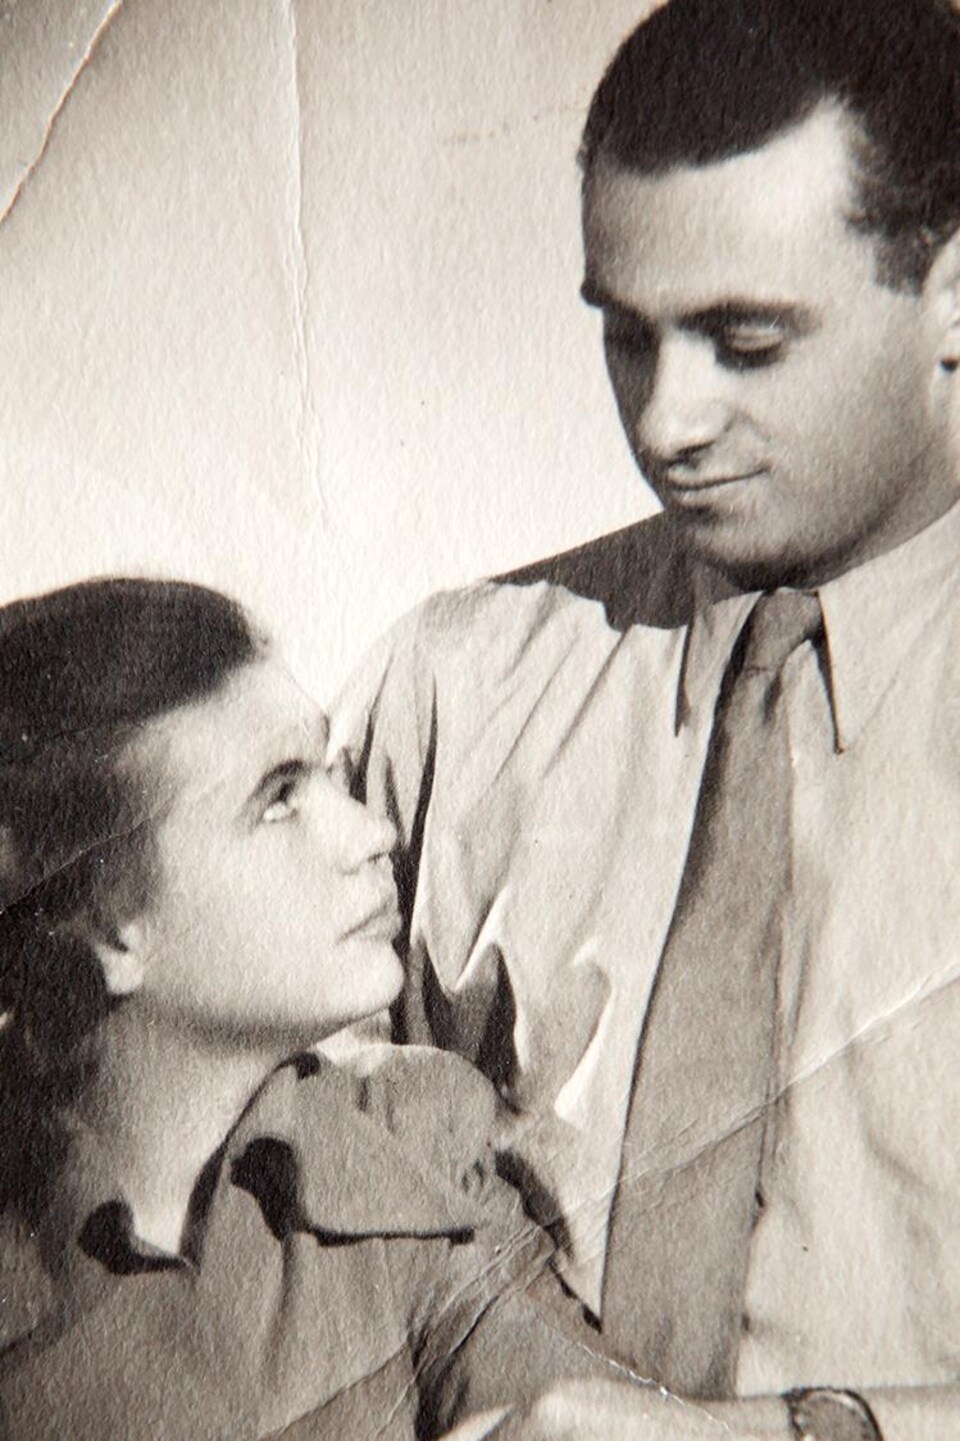 Vera et George échangent un regard tendre sur une vieille photo en noir et blanc.